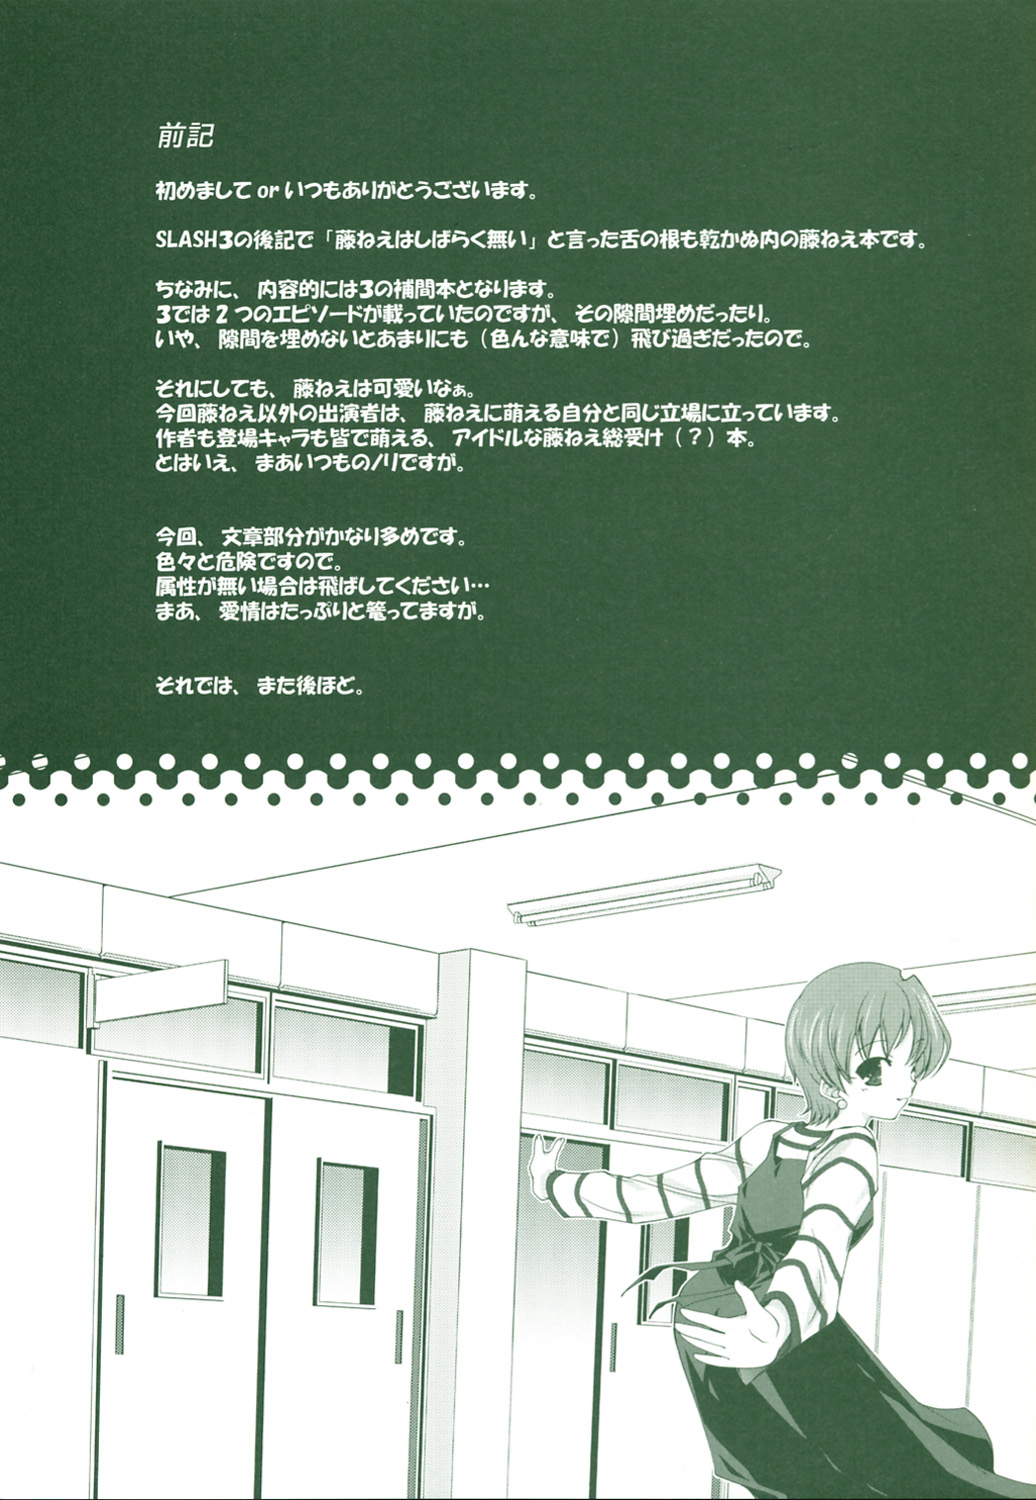 (CR36) [Renai Mangaka (Naruse Hirofume)] SLASH 3 + (Fate/stay night) page 3 full